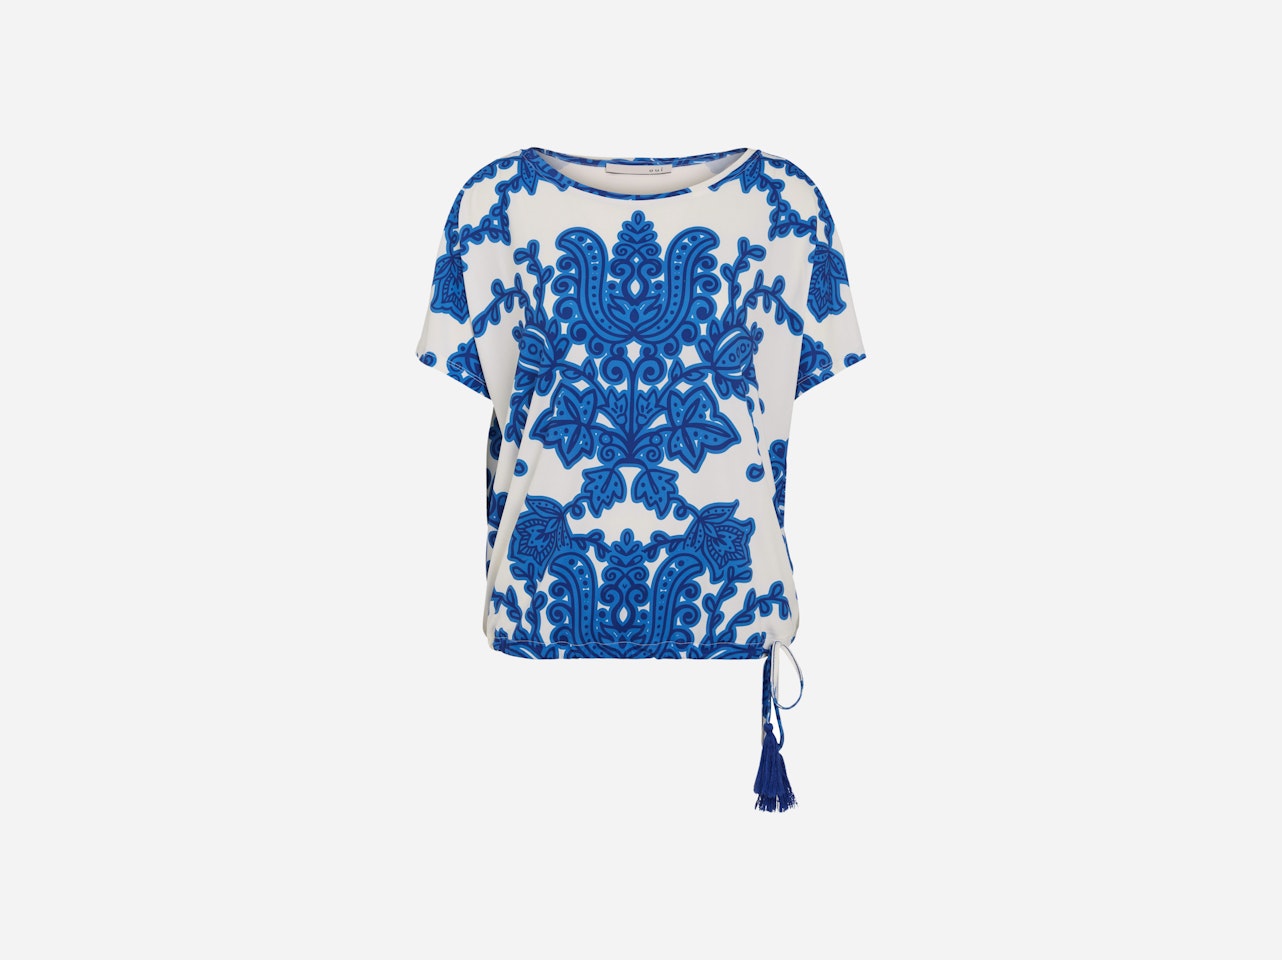 Bild 7 von Blouse shirt in trendy print in white blue | Oui